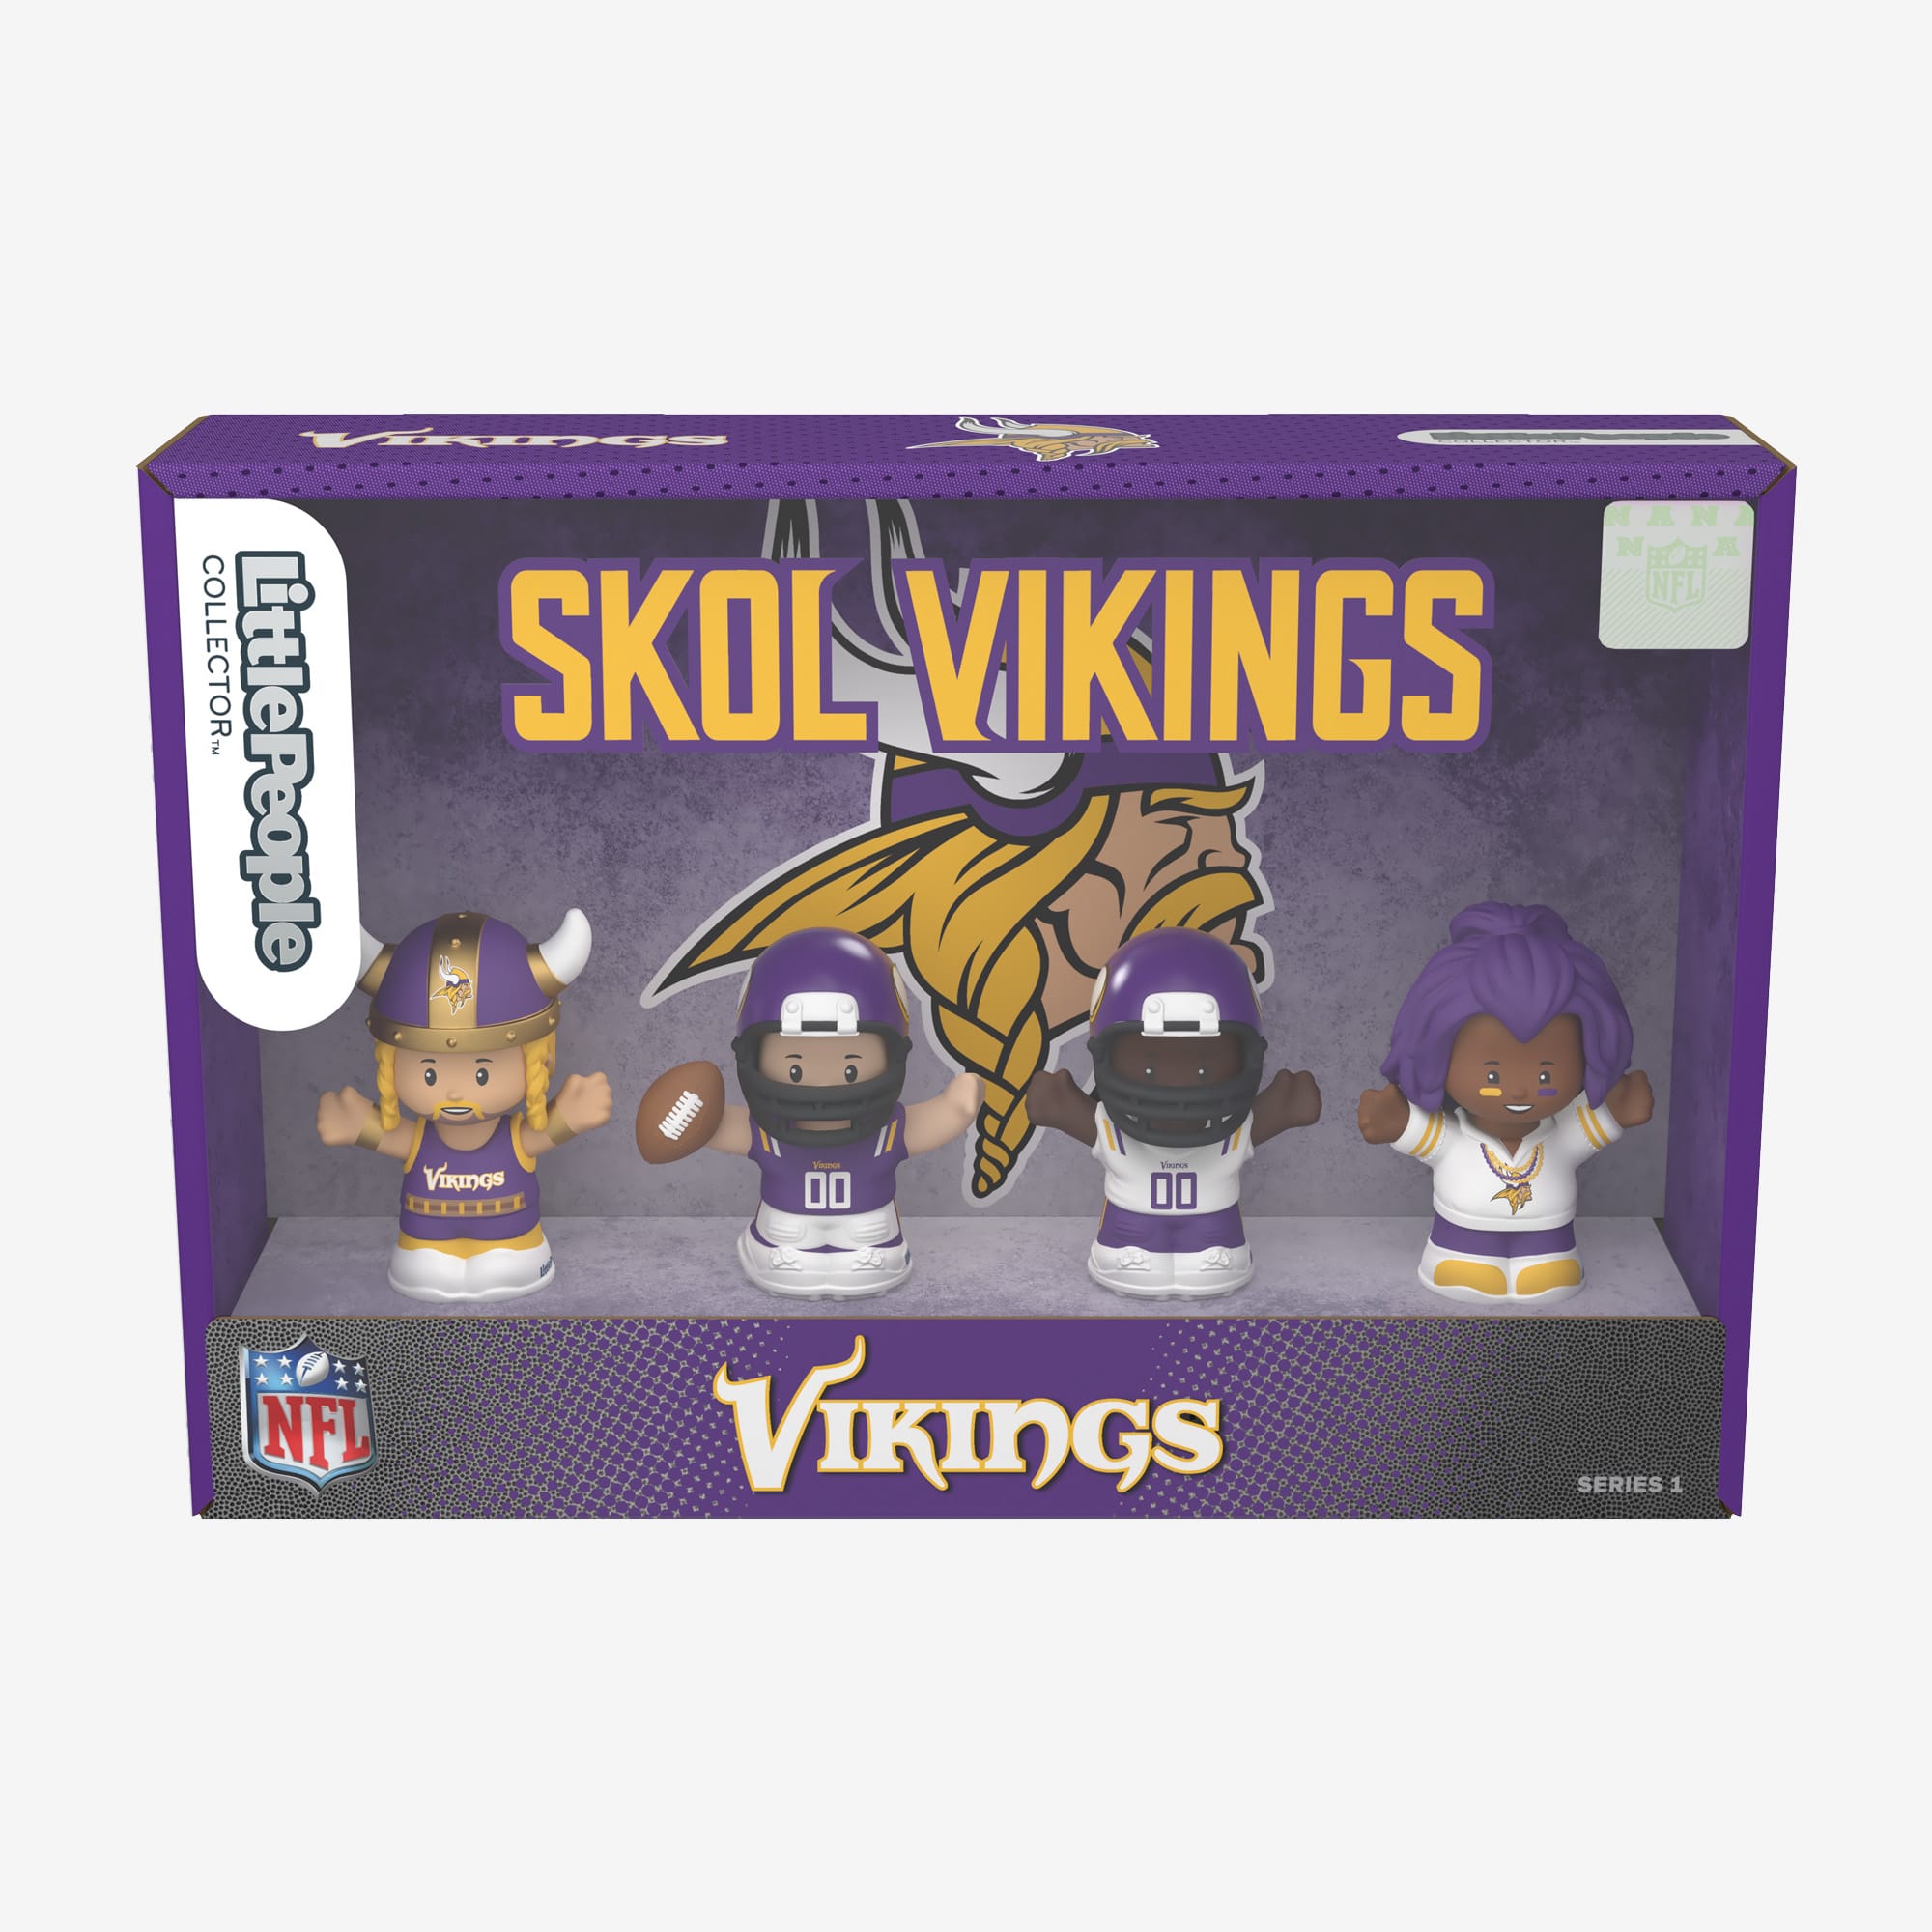 Little People Collector x NFL Minnesota Vikings Set